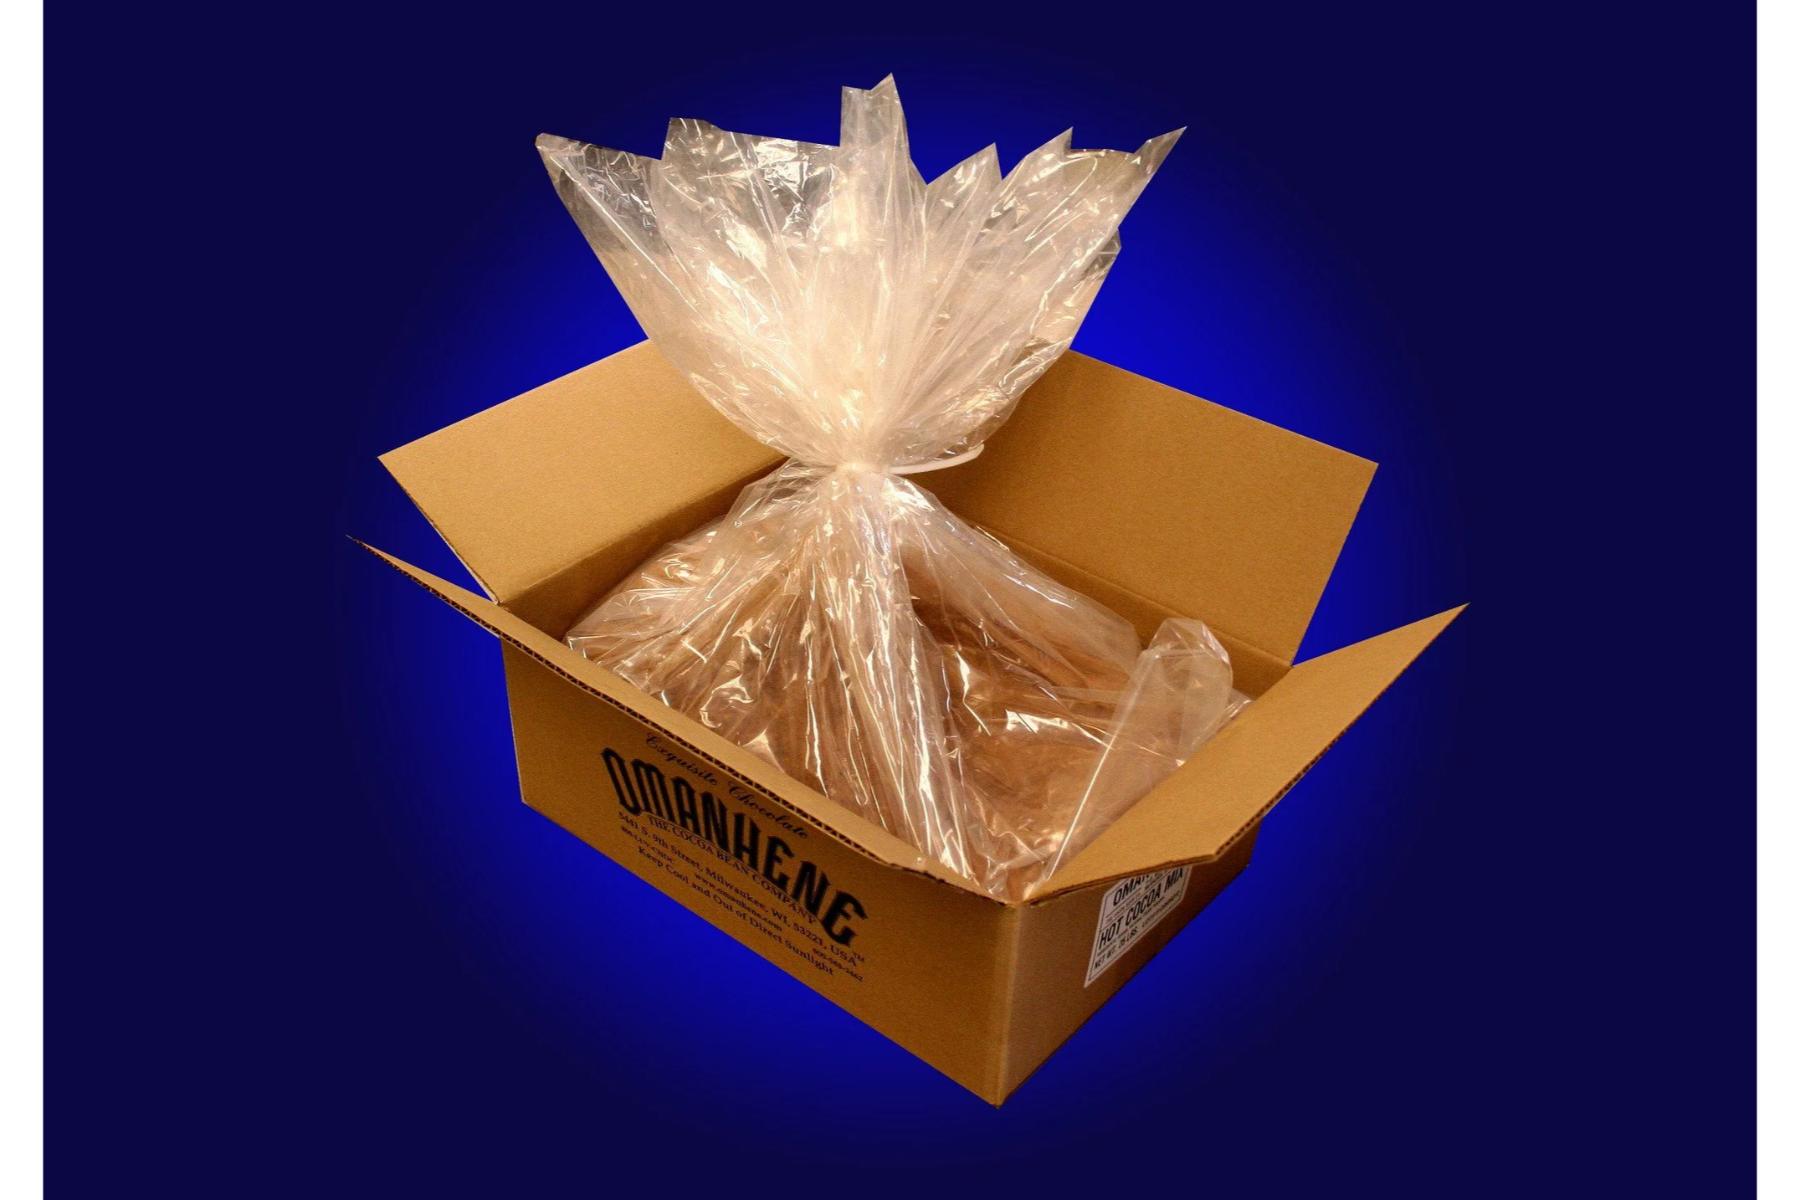 Omanhene Hot Choco Powder - 25 lb. Bulk Box